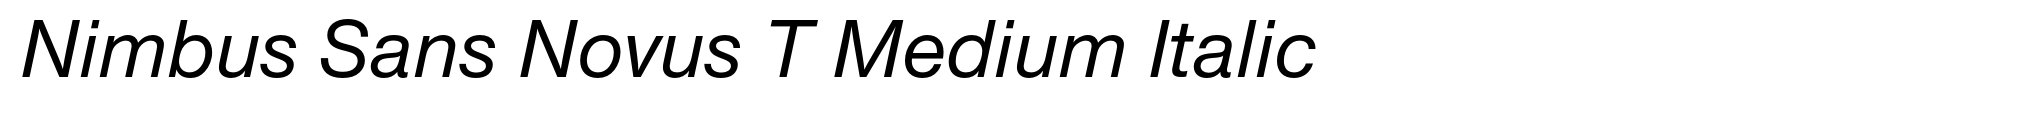 Nimbus Sans Novus T Medium Italic image